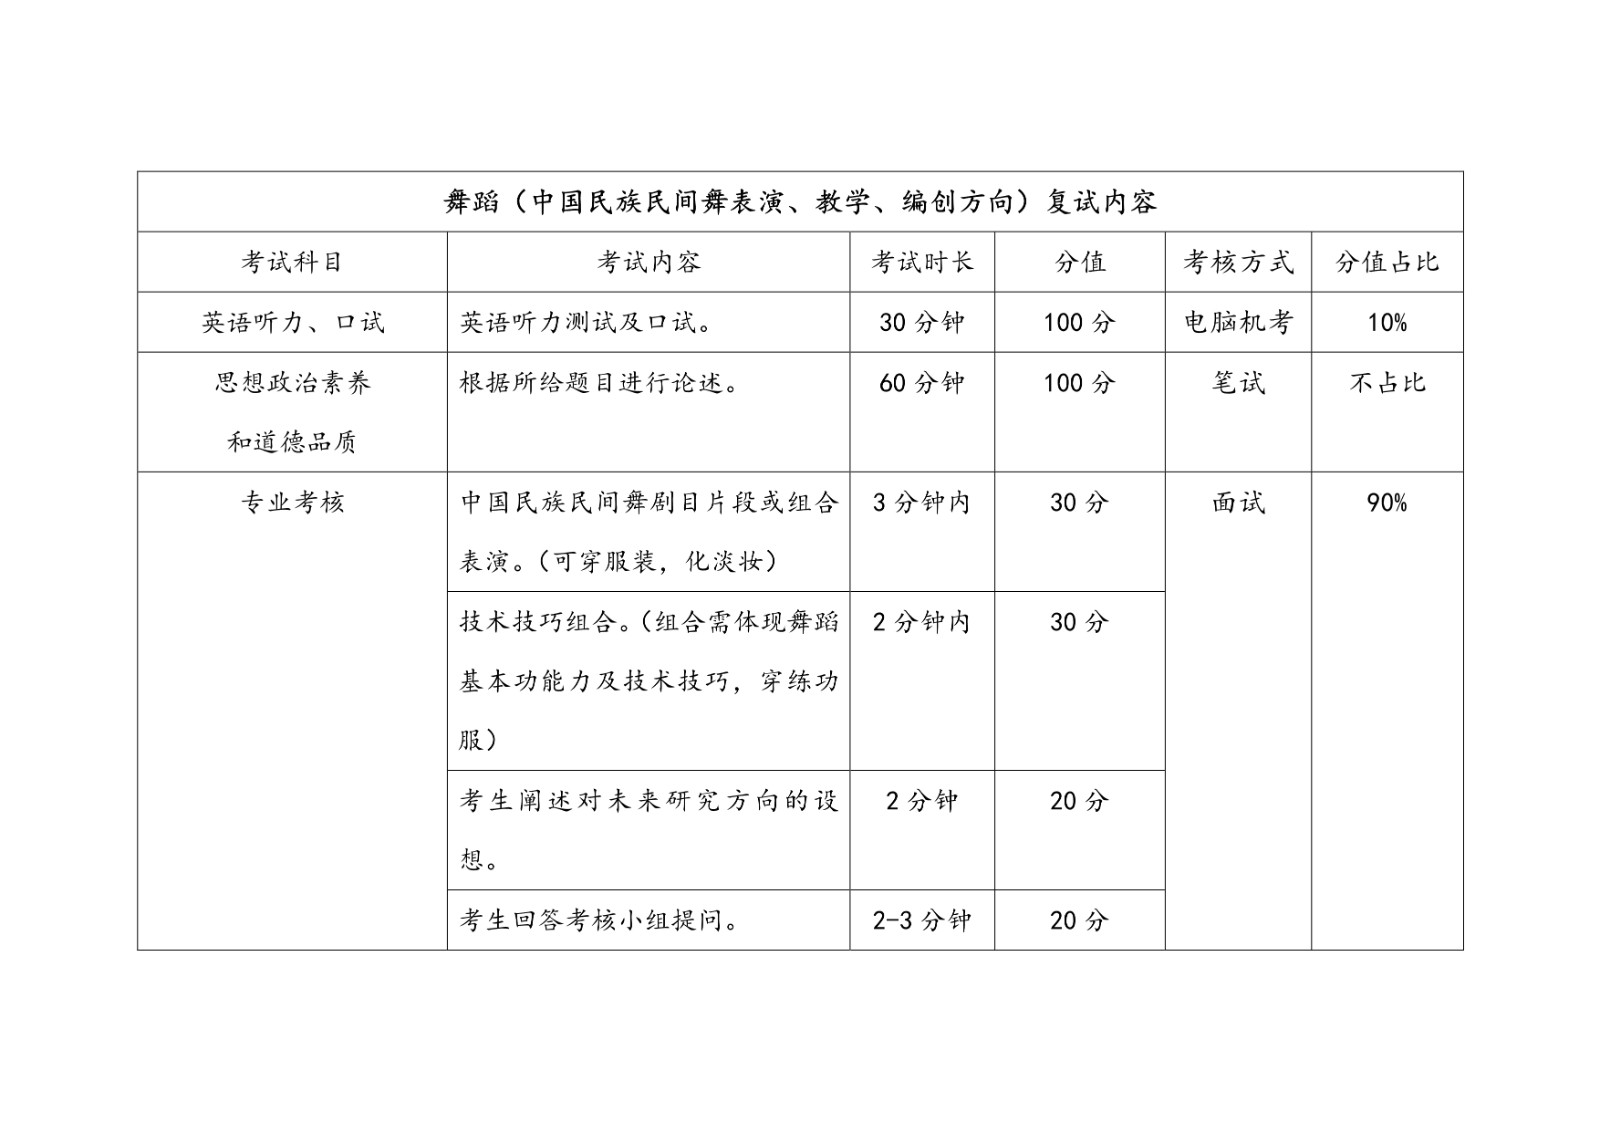 2021年北京舞蹈学院硕士研究生招生考试复试内容公告